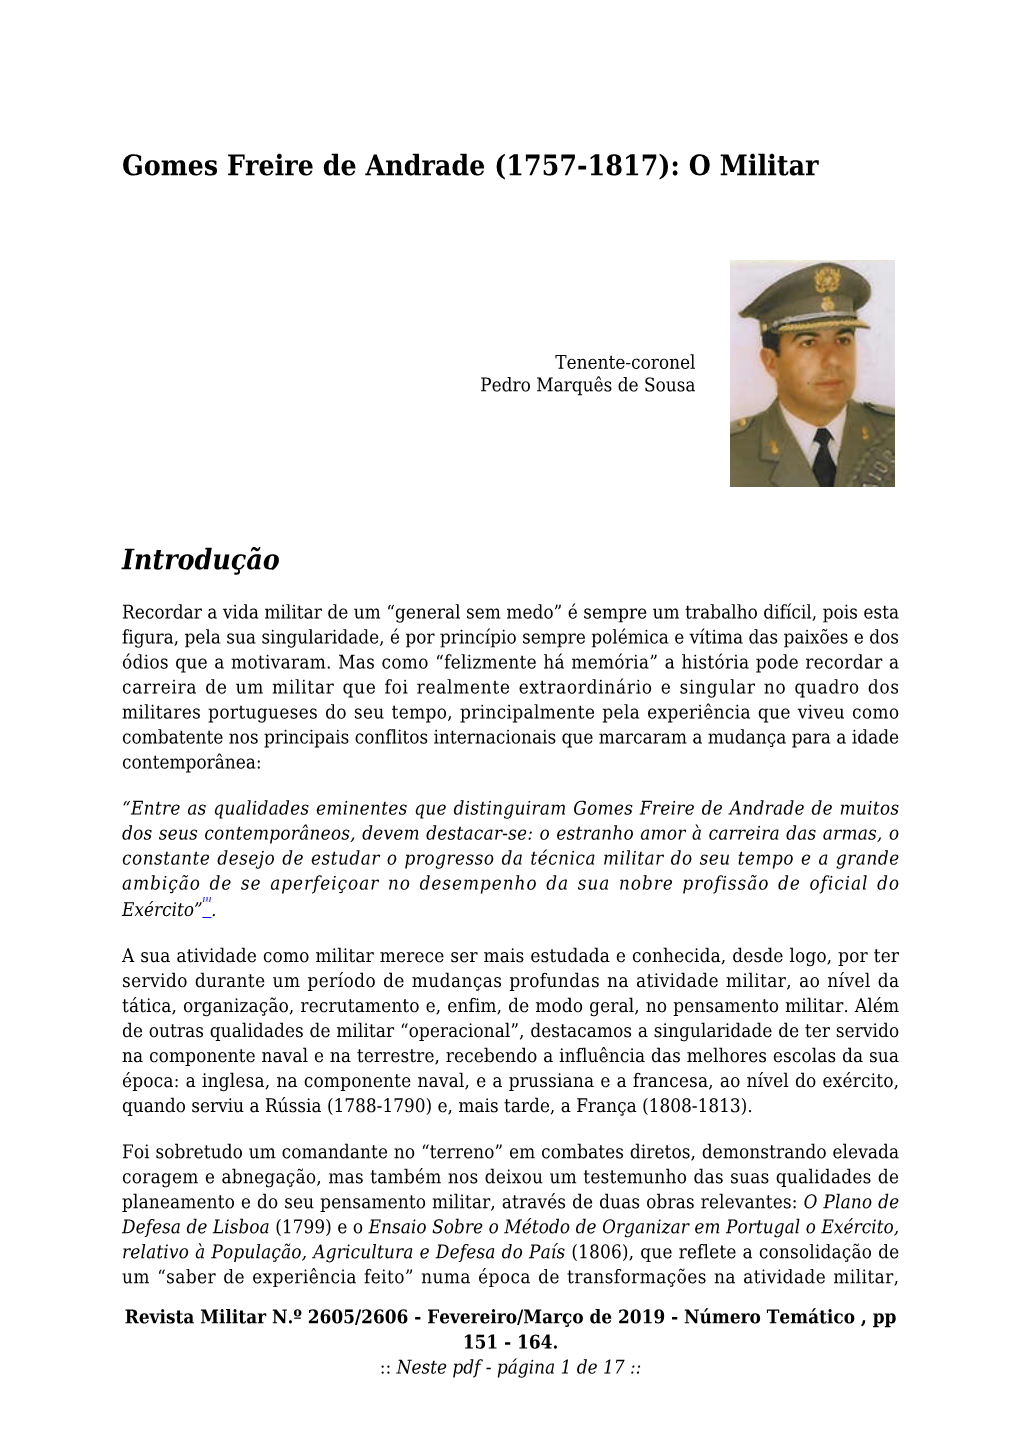 Gomes Freire De Andrade (1757-1817): O Militar